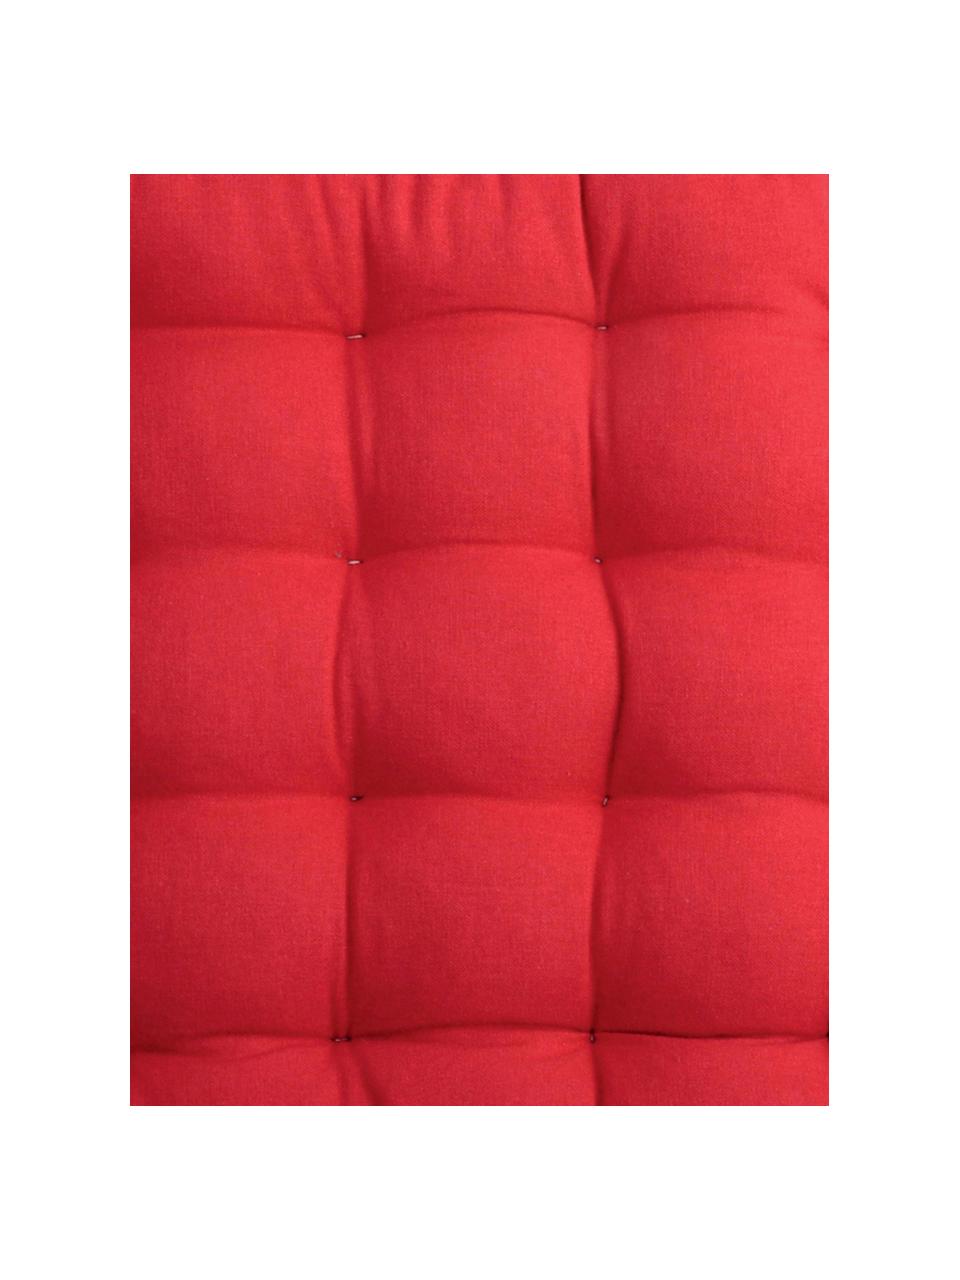 Coussin de chaise réversible Duo rouge/beige, 2 pièces, Rouge, beige, larg. 35 x long. 35 cm